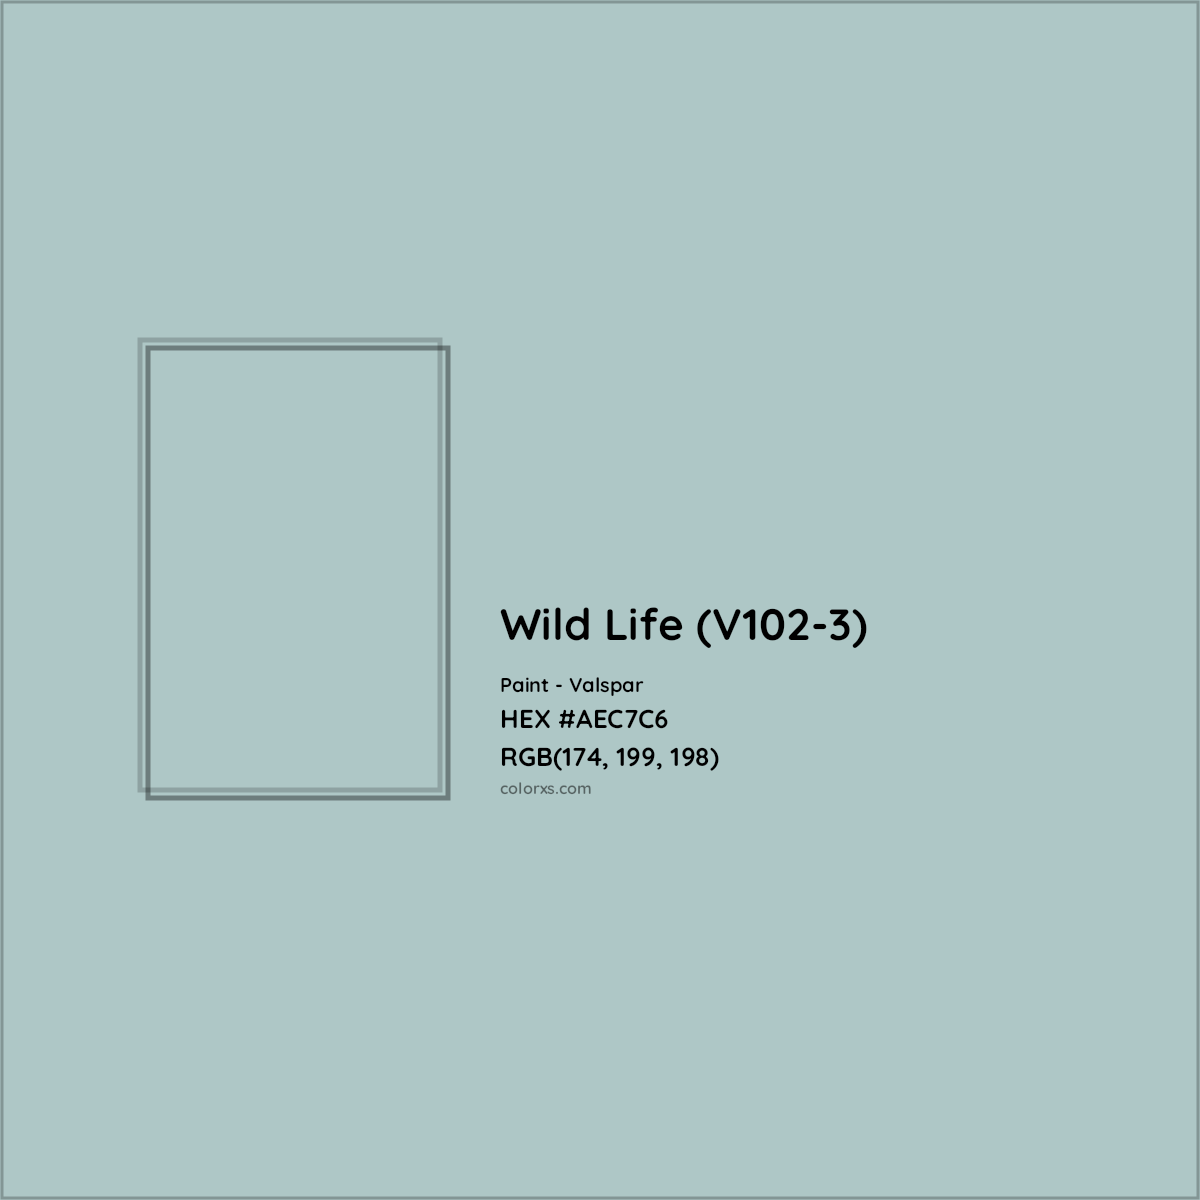 HEX #AEC7C6 Wild Life (V102-3) Paint Valspar - Color Code